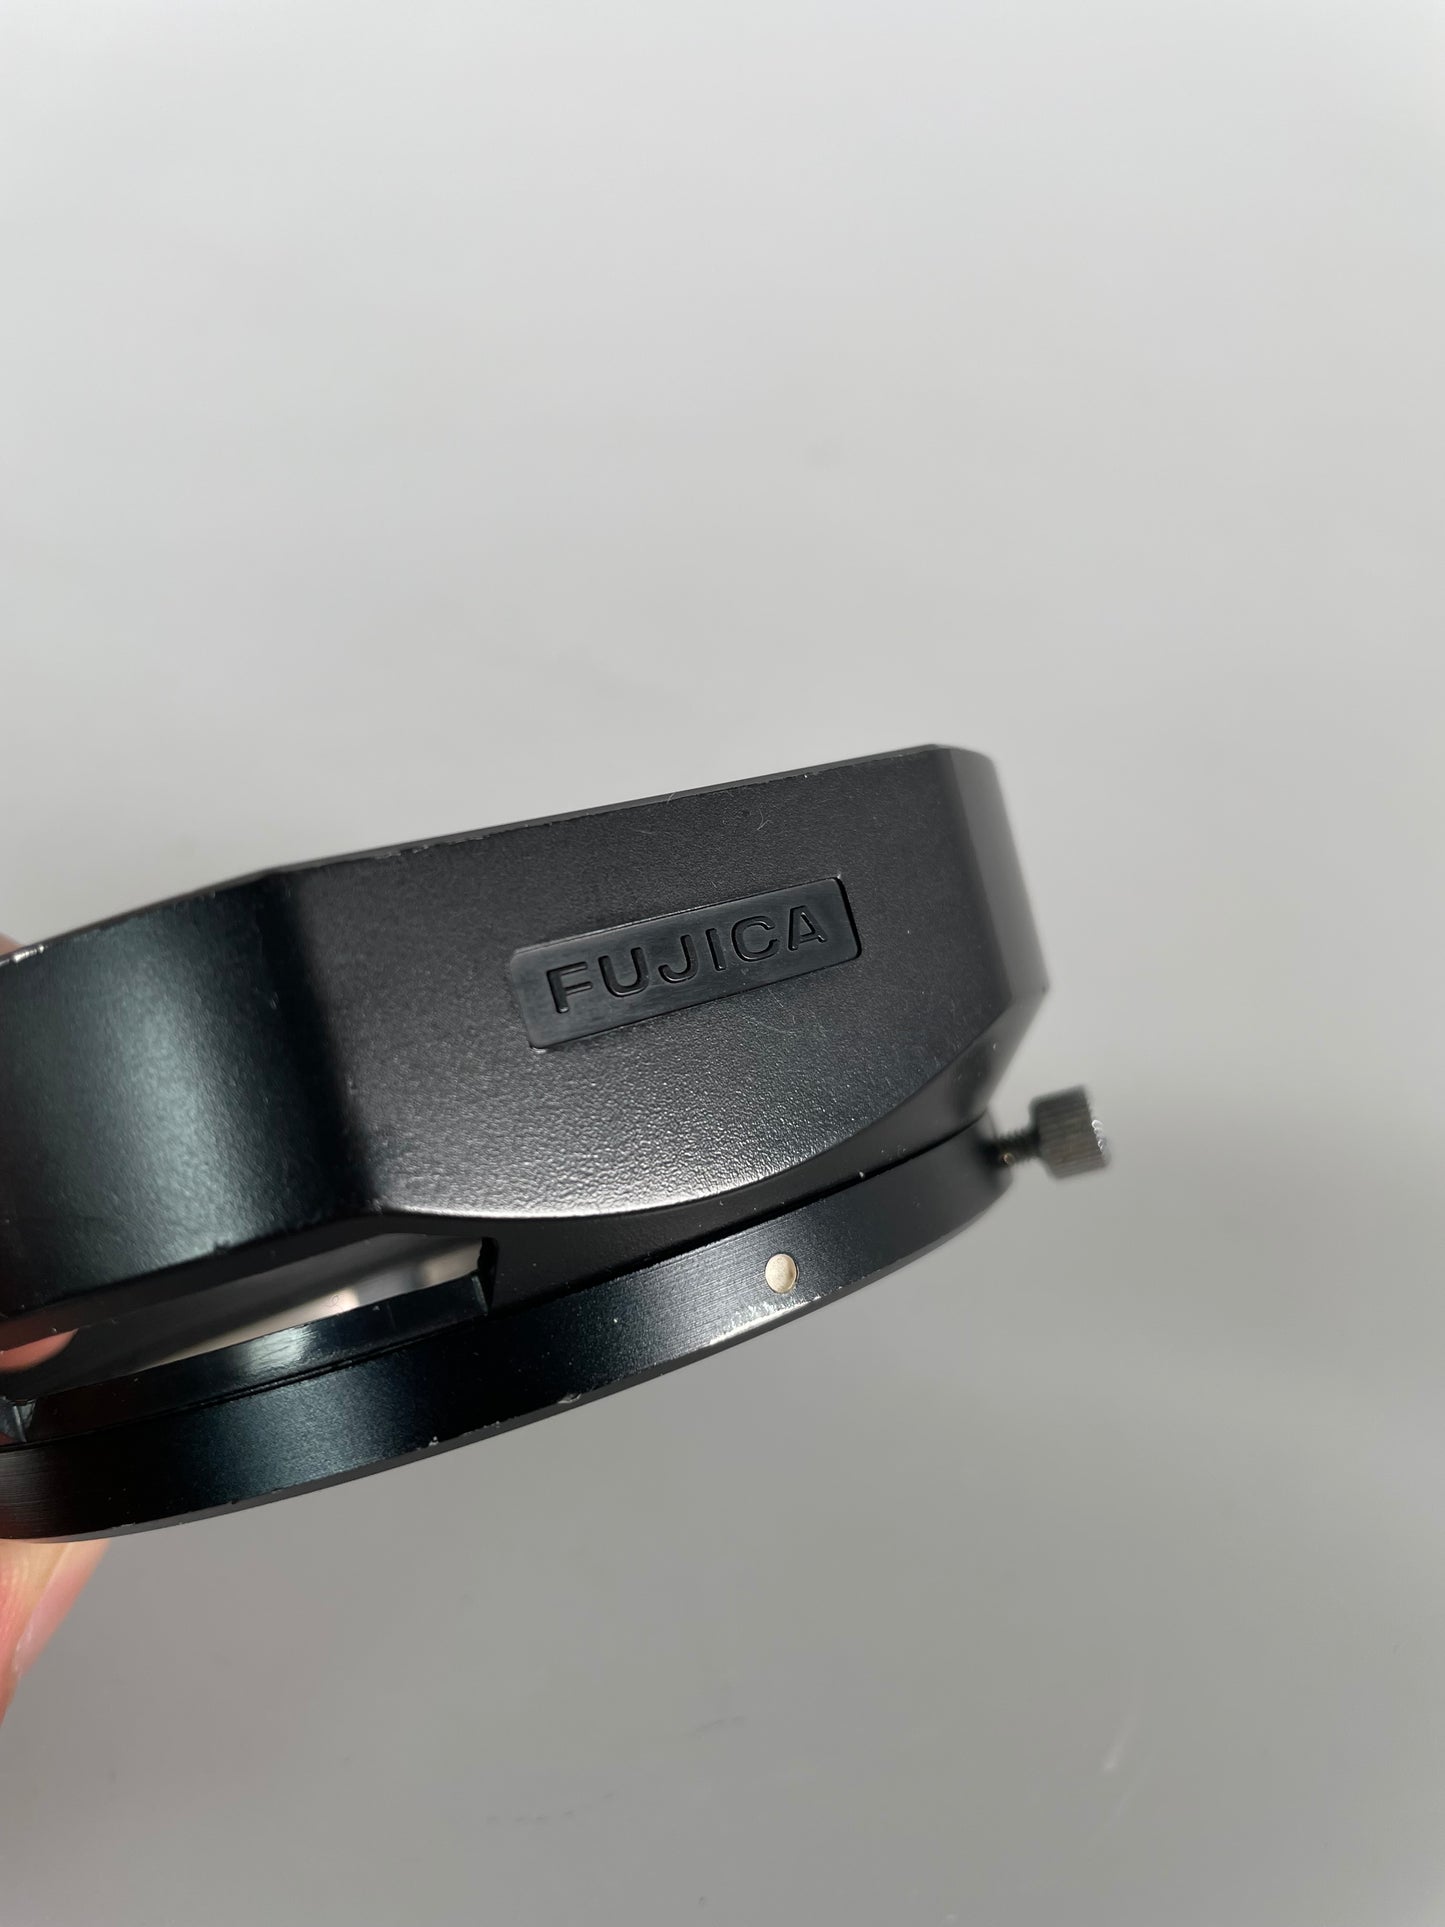 Fujica 67mm Slip On Lens Hood Shade for GW690 Camera